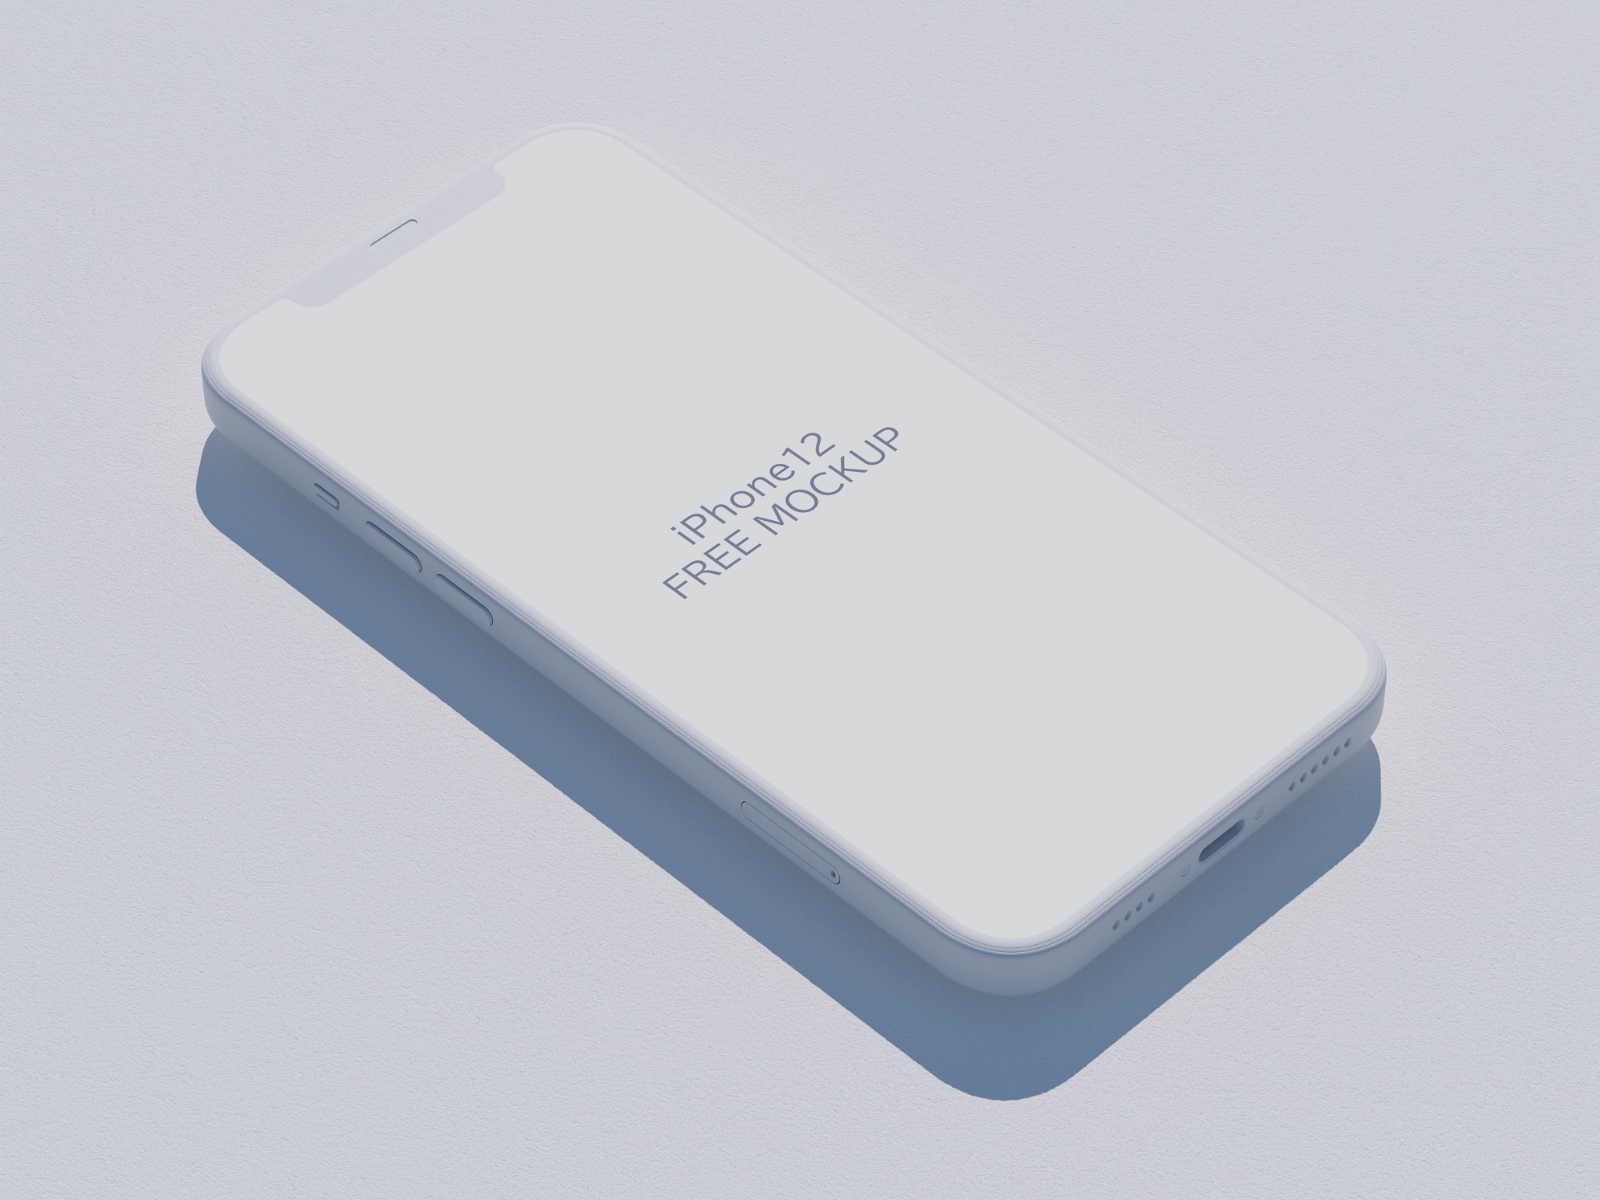 2.5D风格iPhone 12 Mockup PSD素材下载 – UI8素材